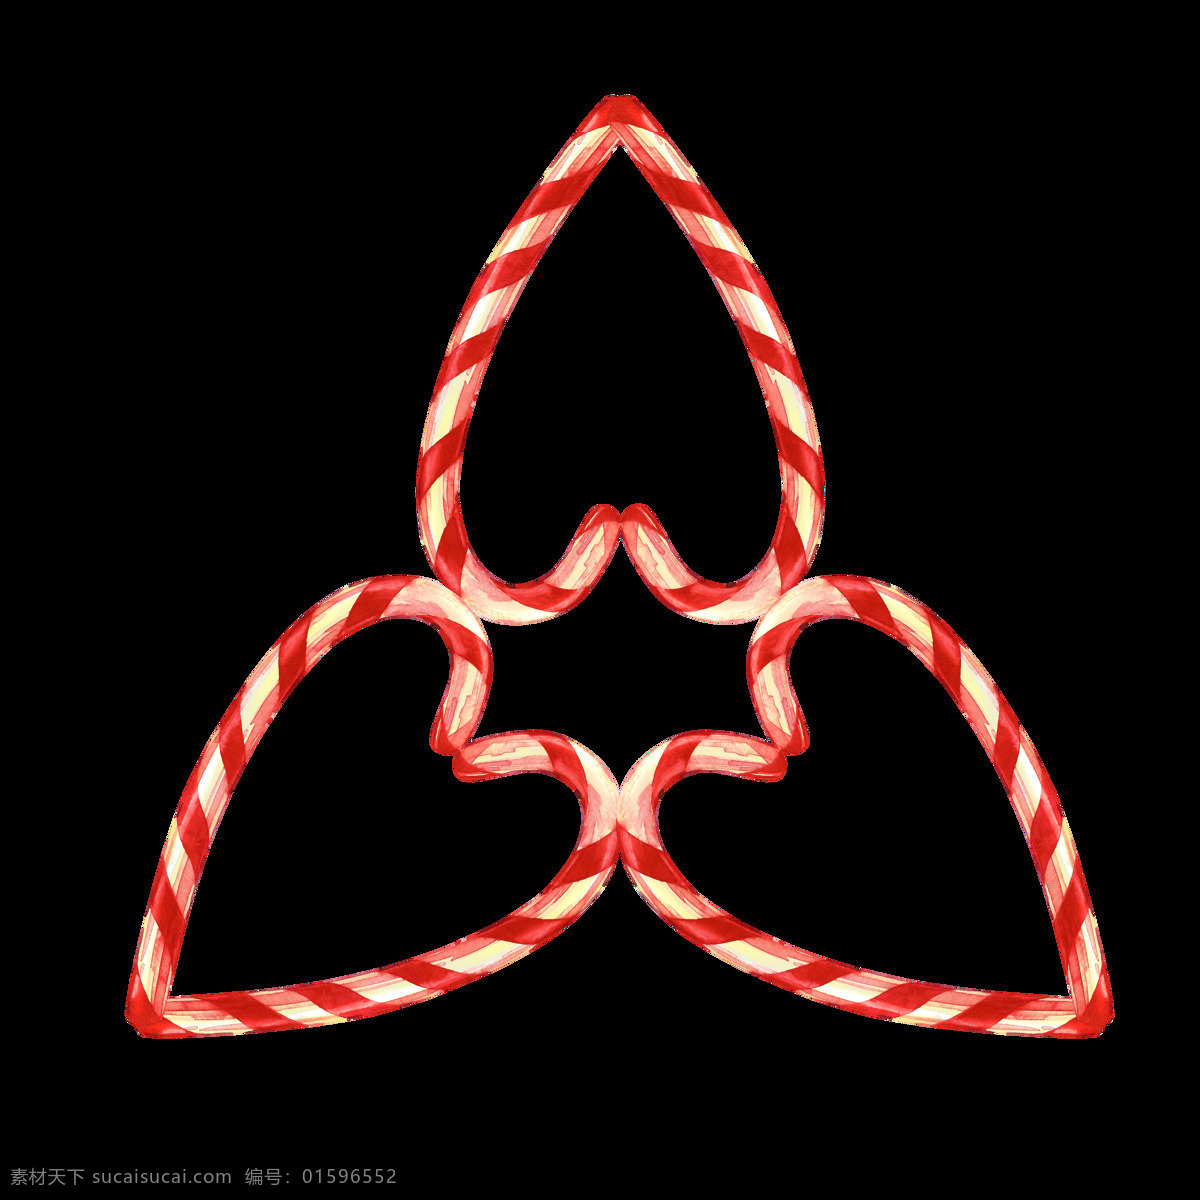 拐杖 糖果 拼接 三角 图案 透明 白色 红色 免扣素材 条纹 透明素材 心形 装饰图片